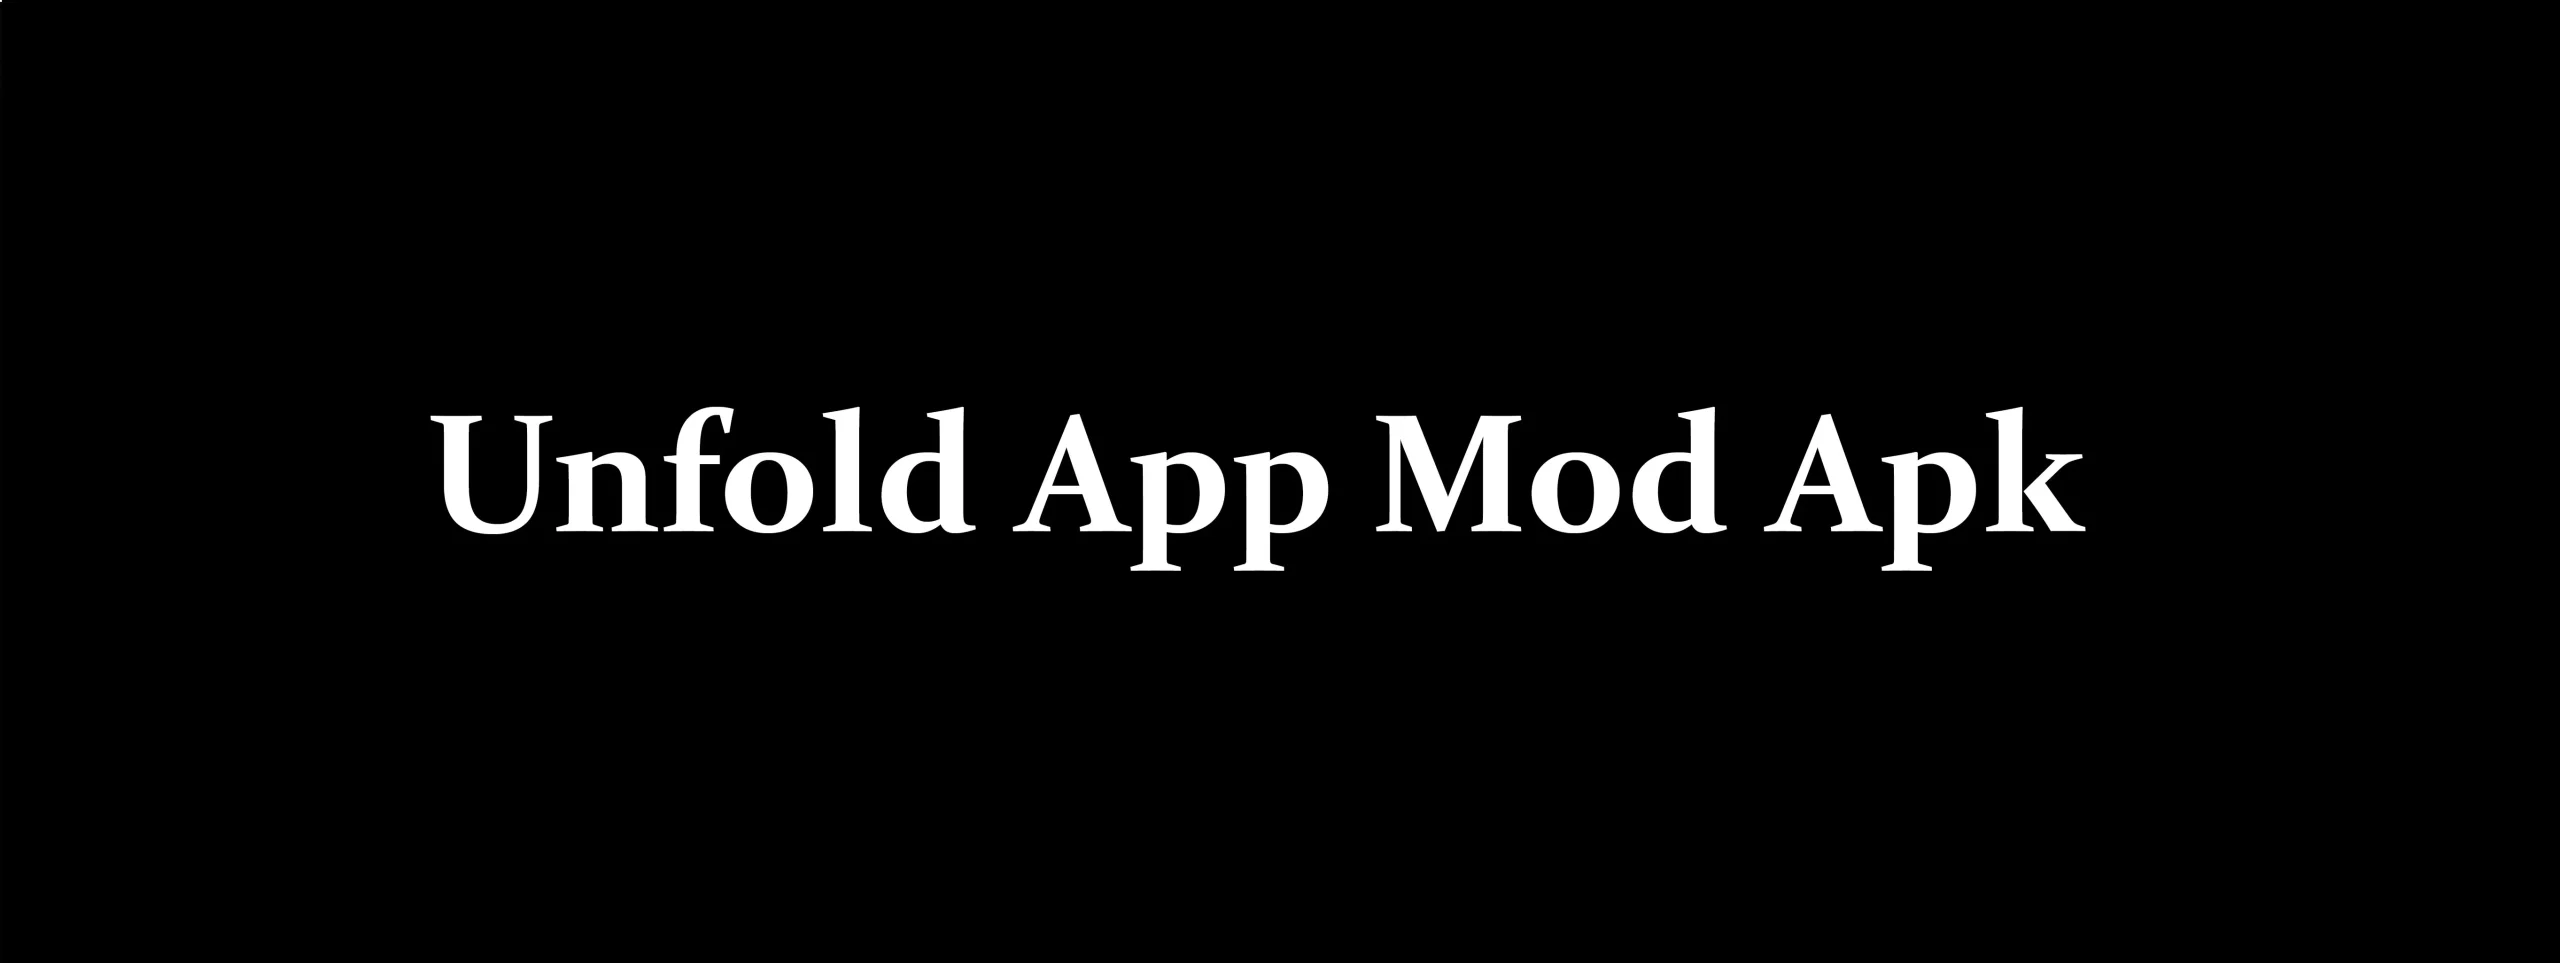 Unfold MOD APK V8.68.0